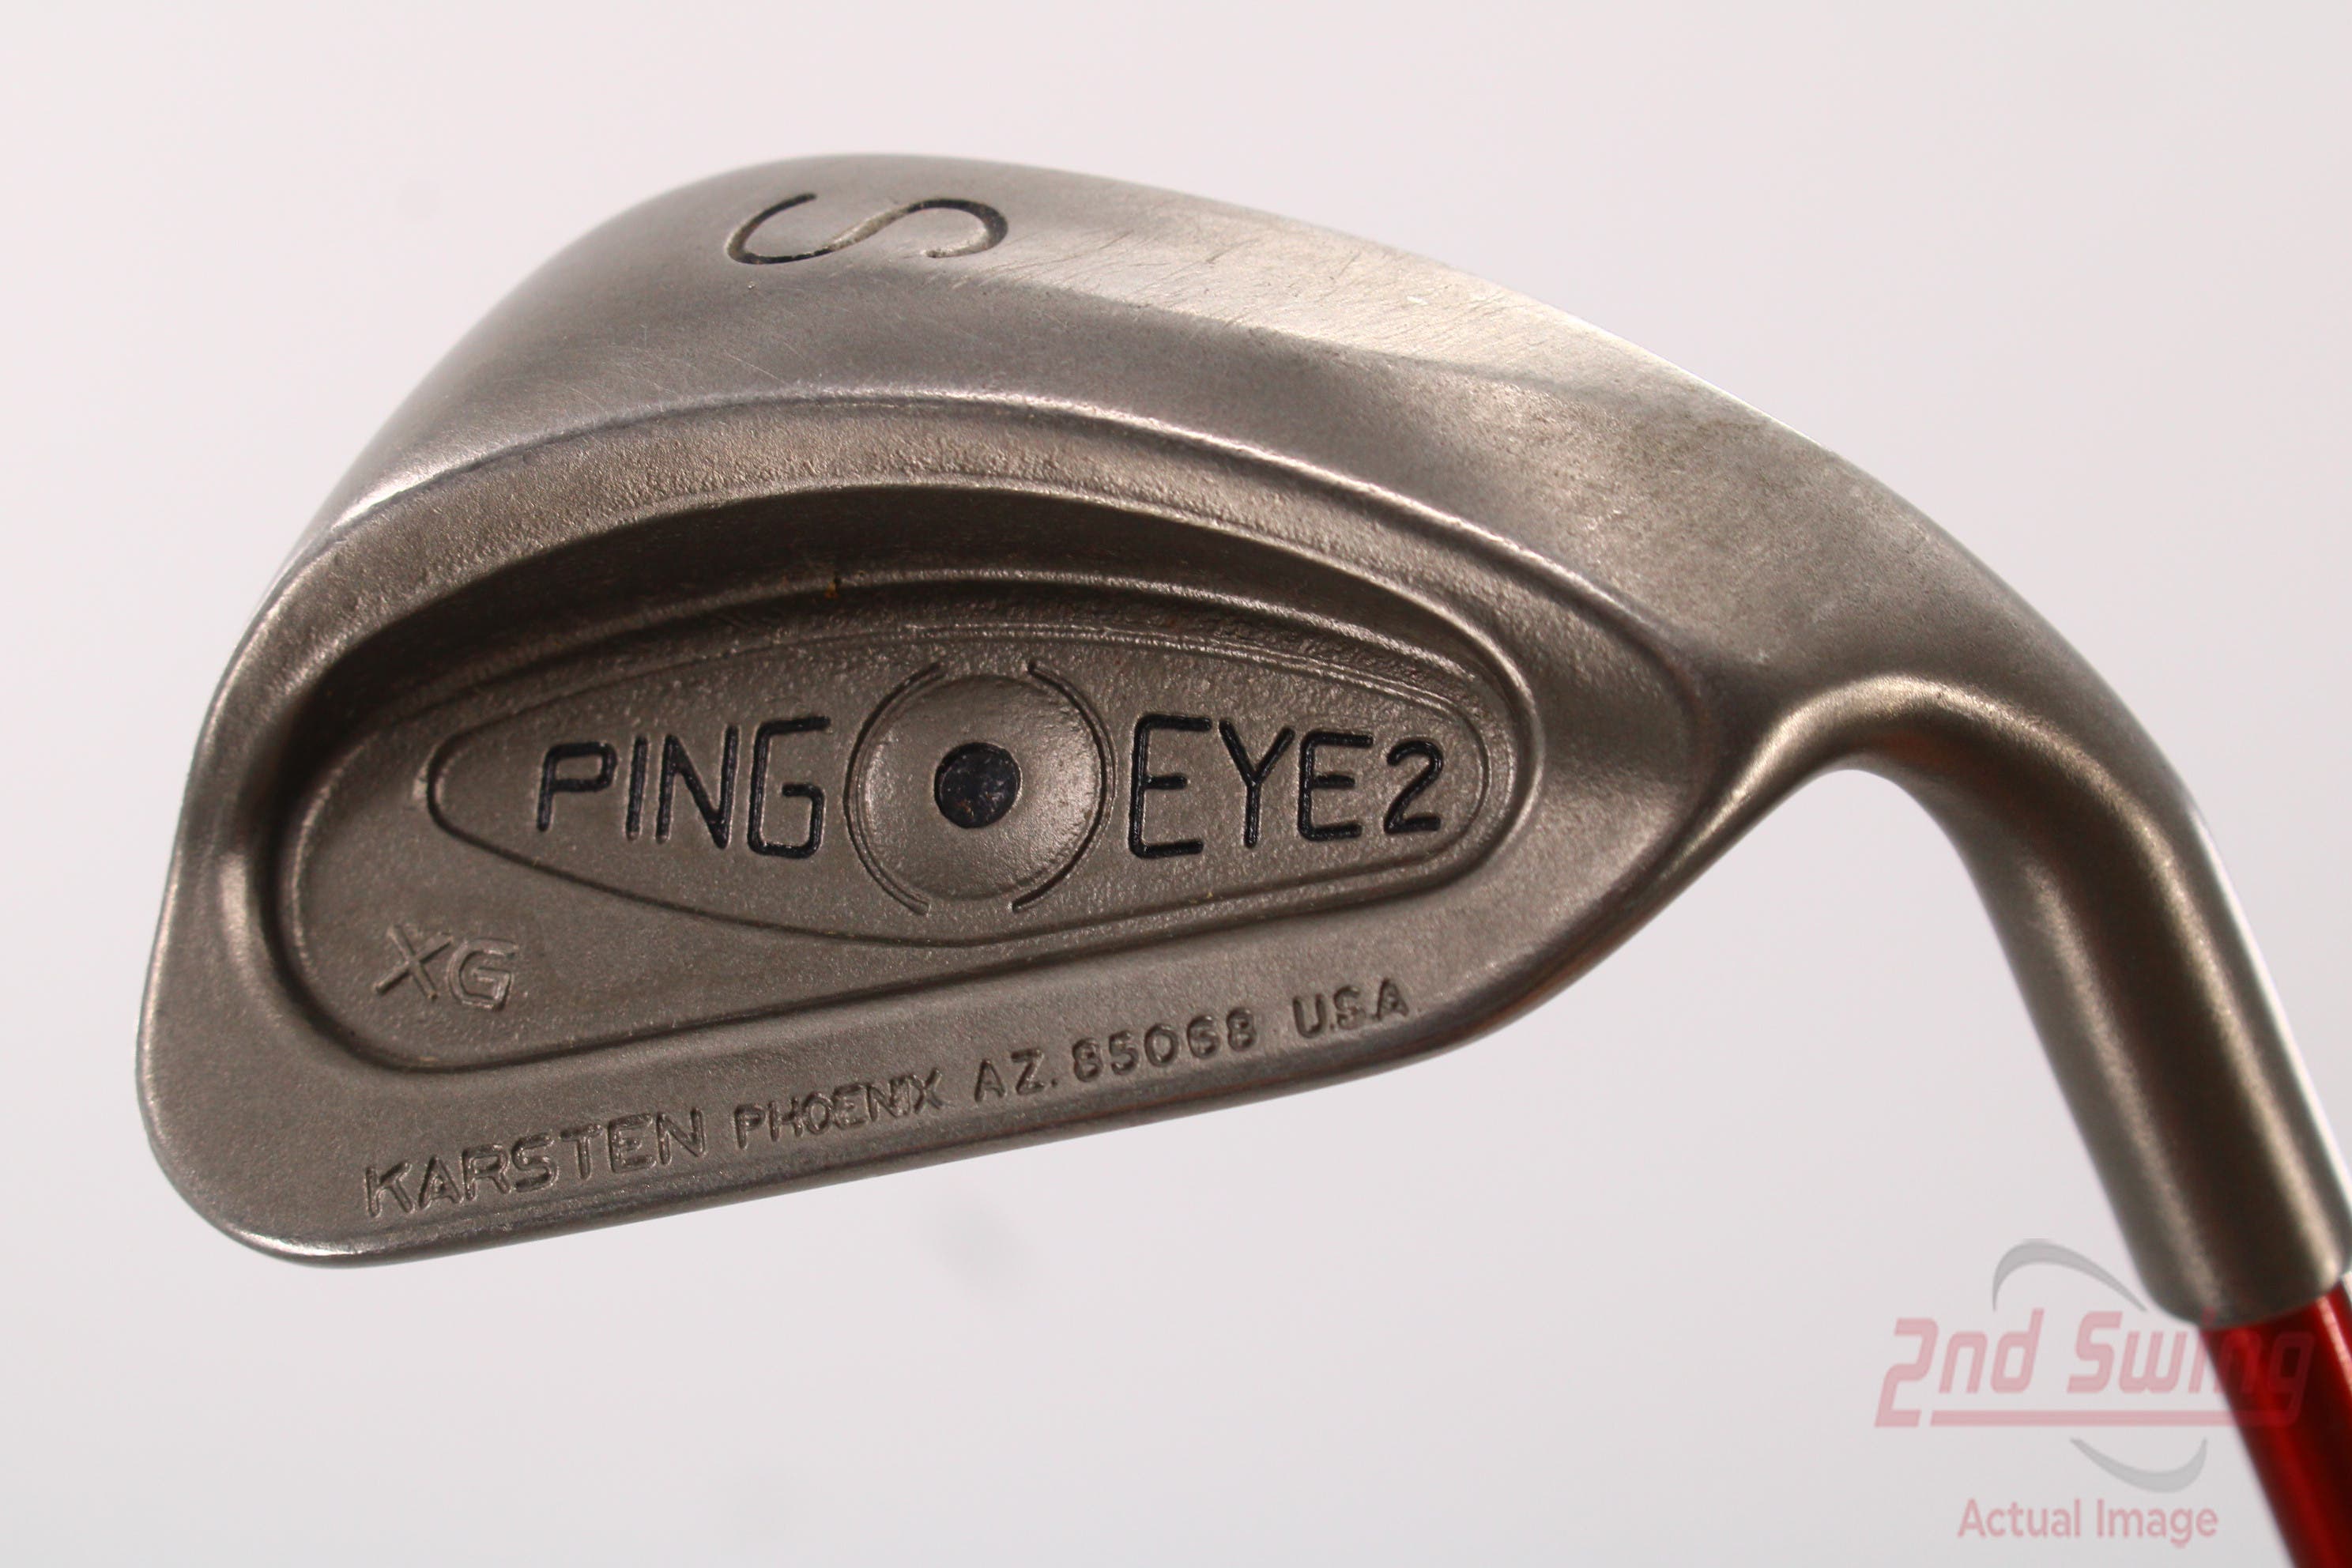 Ping Eye 2 XG Wedge (A-92333828978)